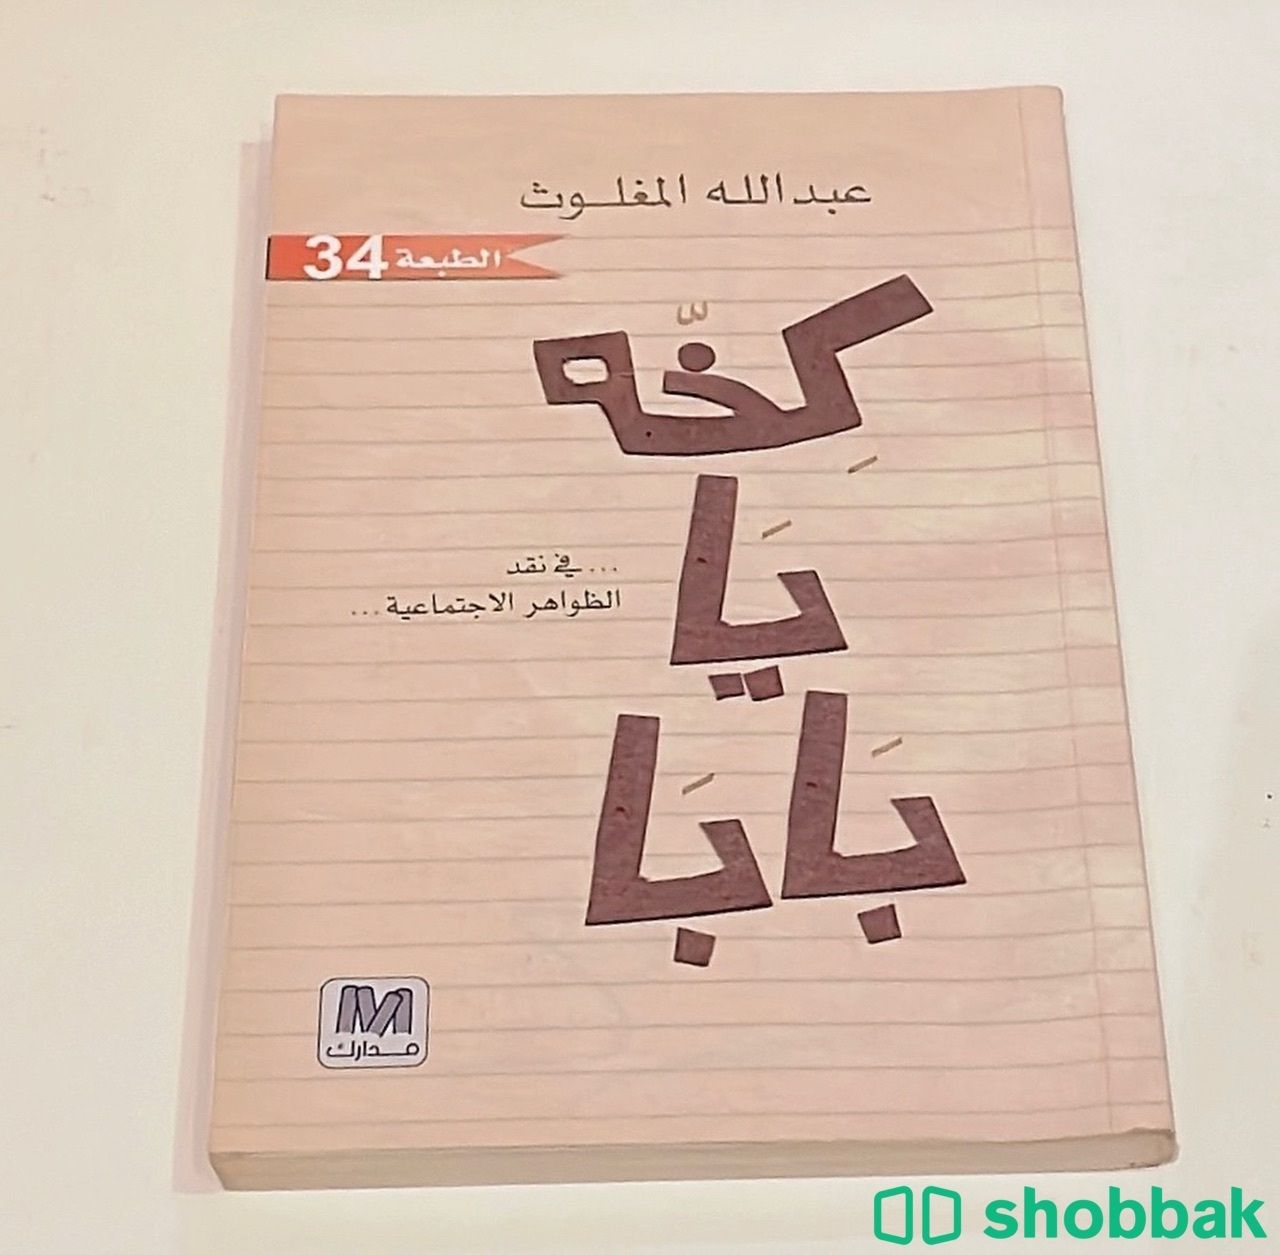 كتاب باللغة العربية. Shobbak Saudi Arabia